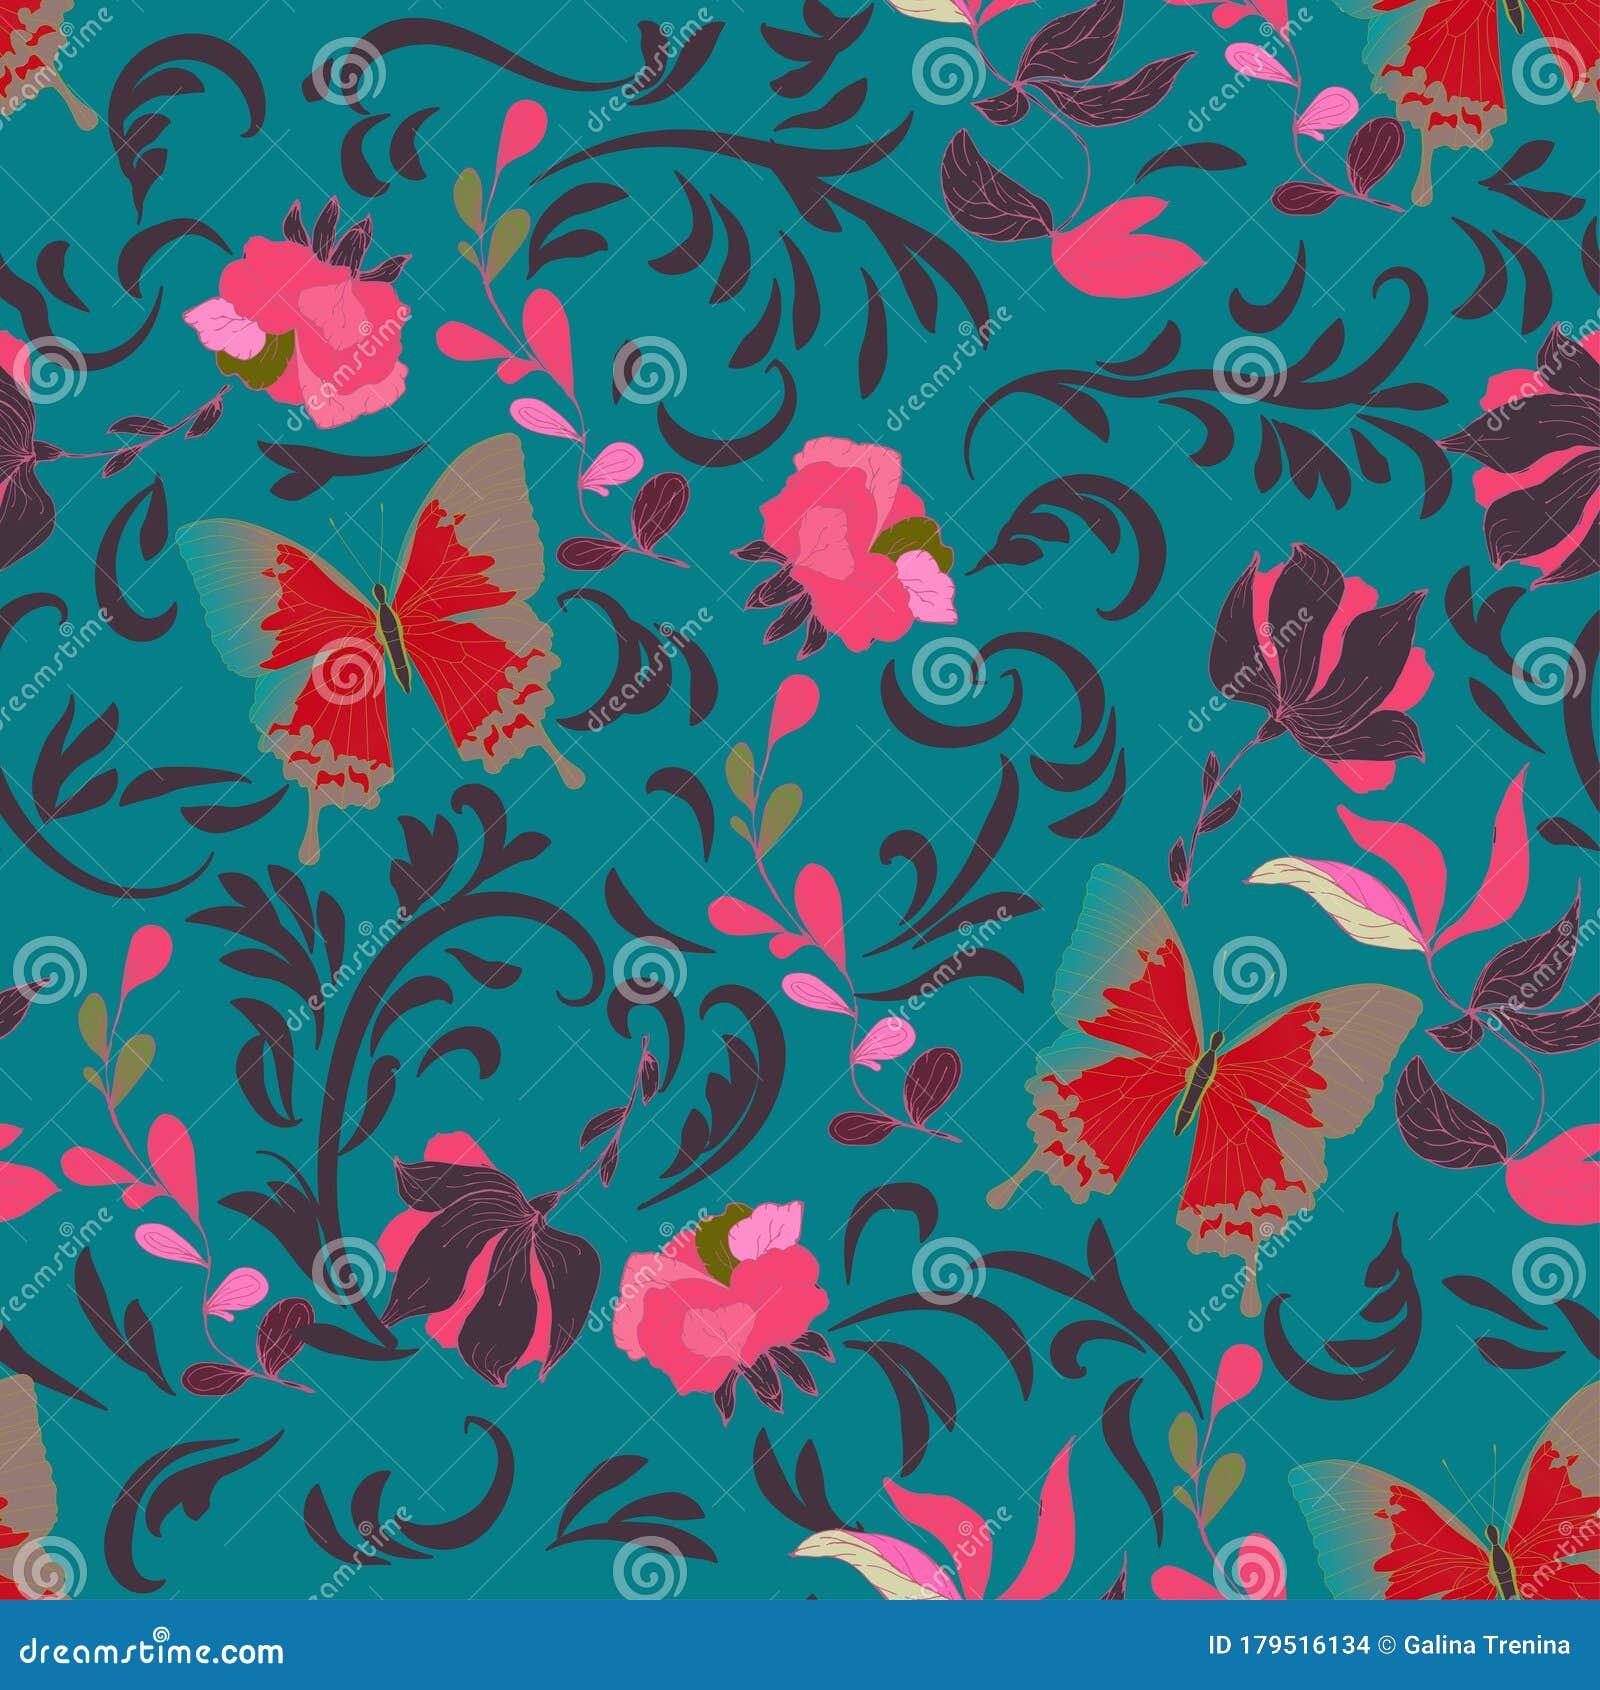 蝴蝶的无缝矢量花图案 青绿色浅蓝色背景上优雅的卷边花朵的镶嵌库存例证 插画包括有附庸风雅 装饰